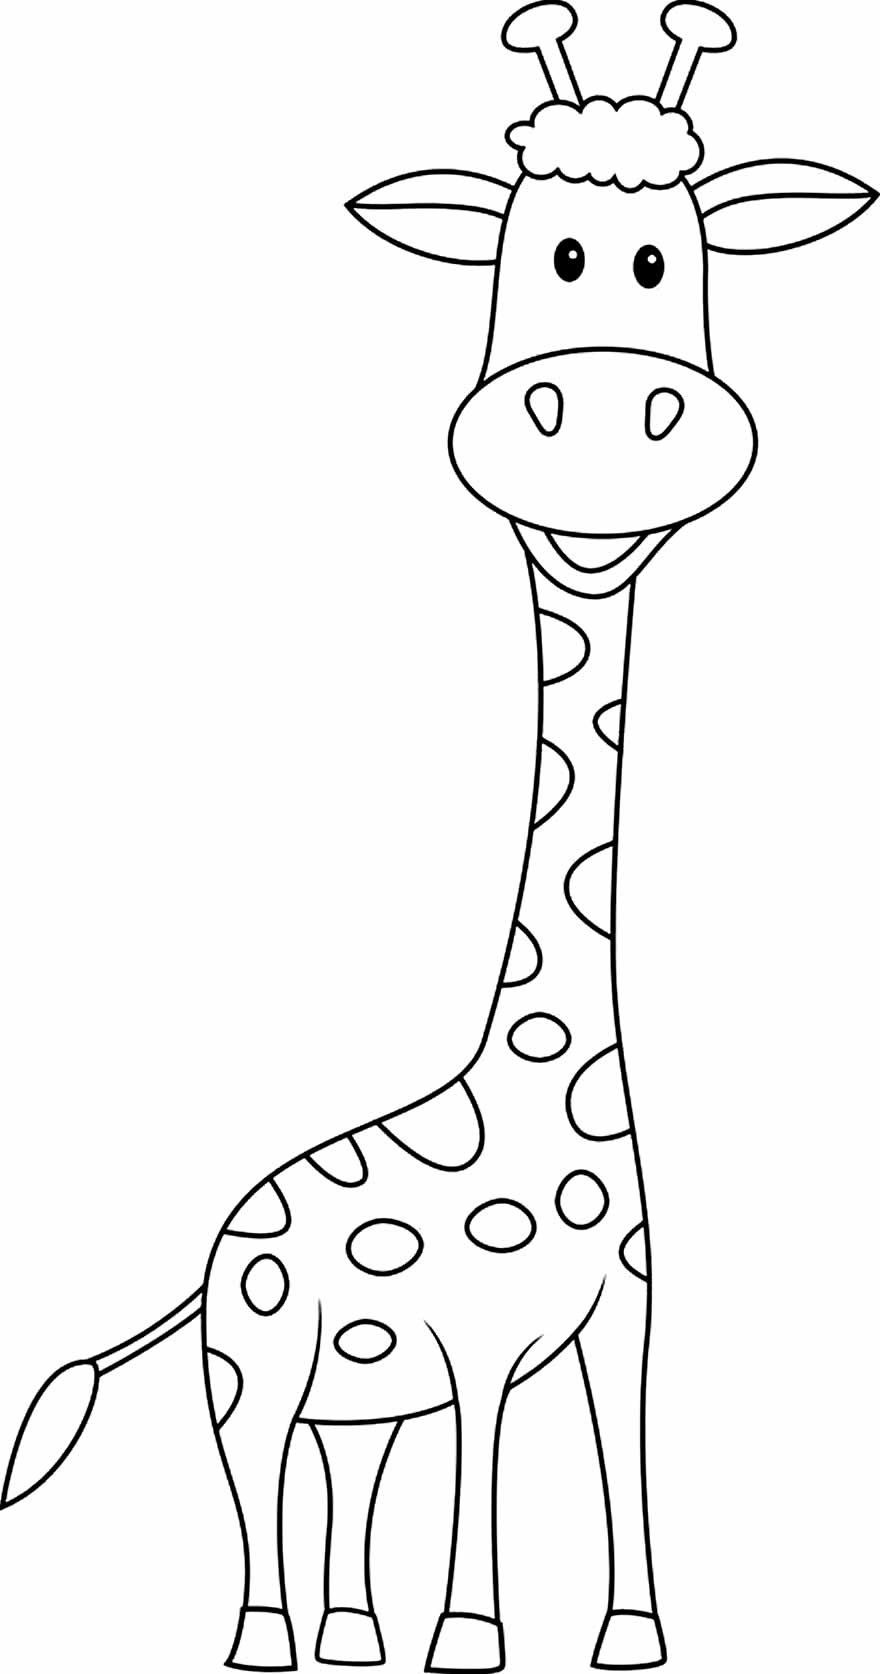 Desenho de girafa para colorir